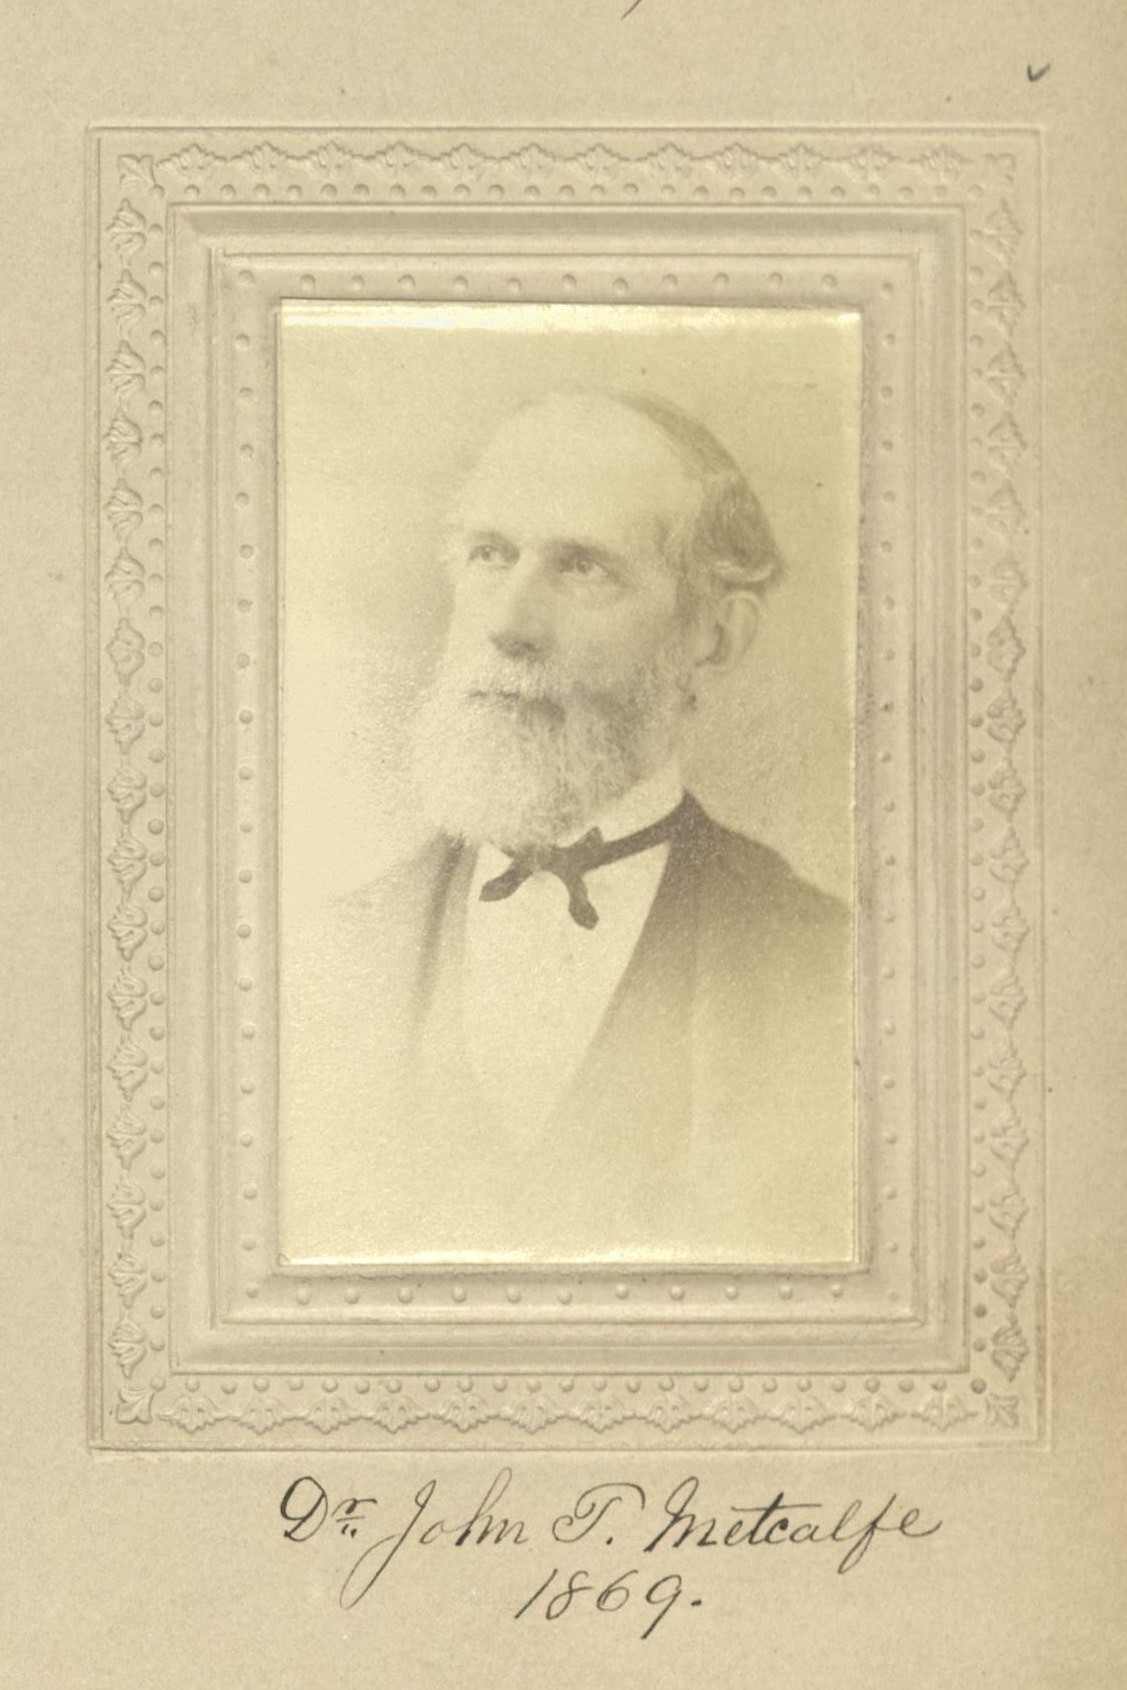 Member portrait of John T. Metcalfe